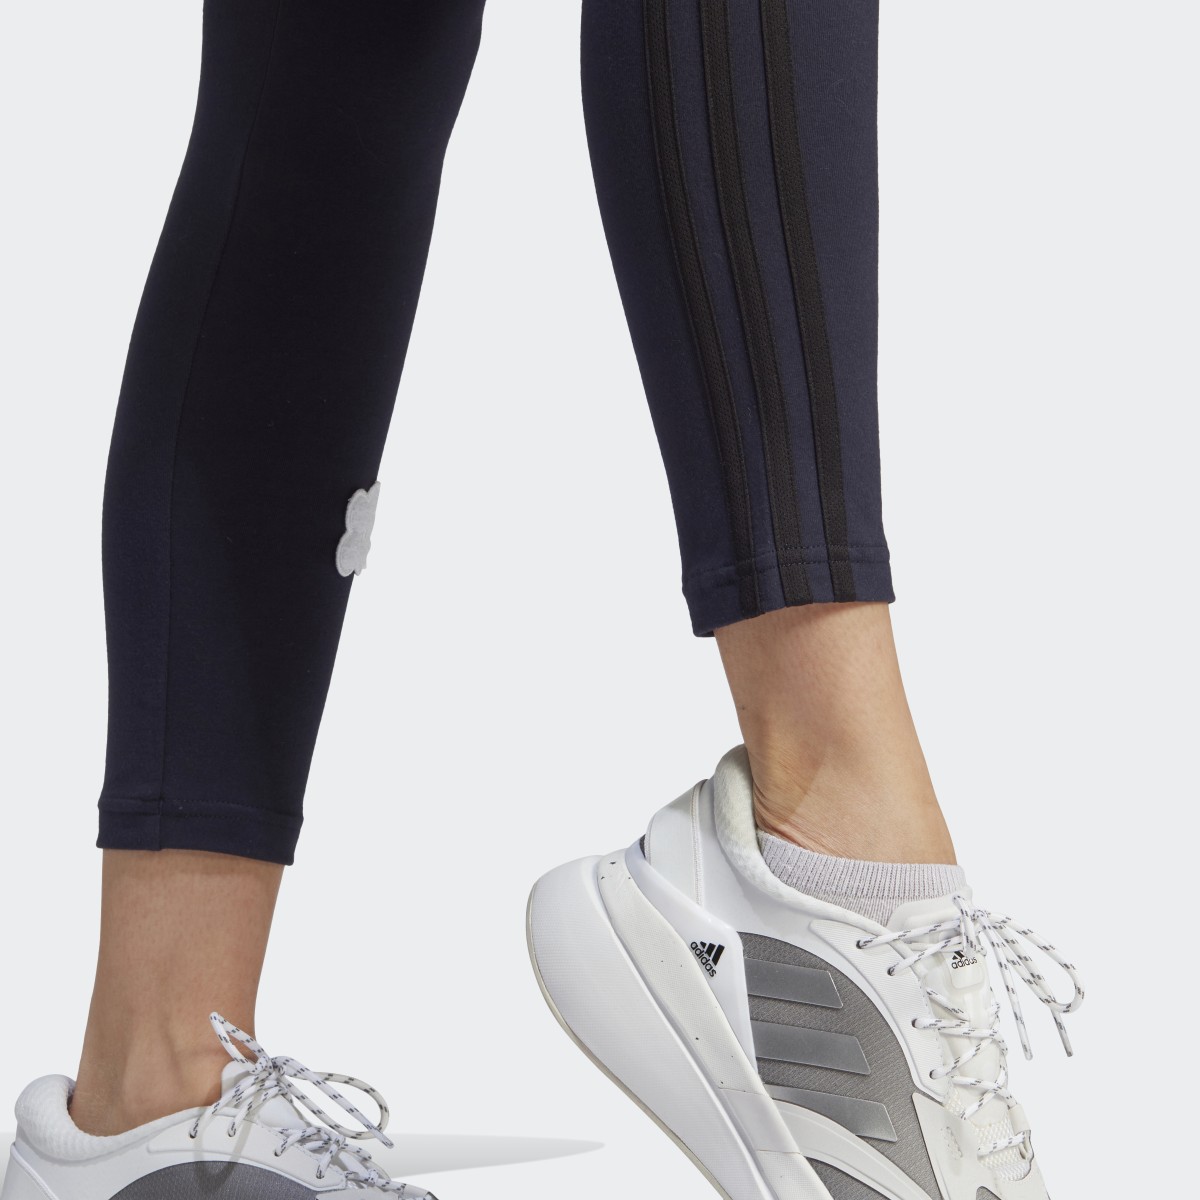 Adidas Leggings de Cintura Subida em Algodão 3-Stripes com Remendos Florais em Feltro. 6